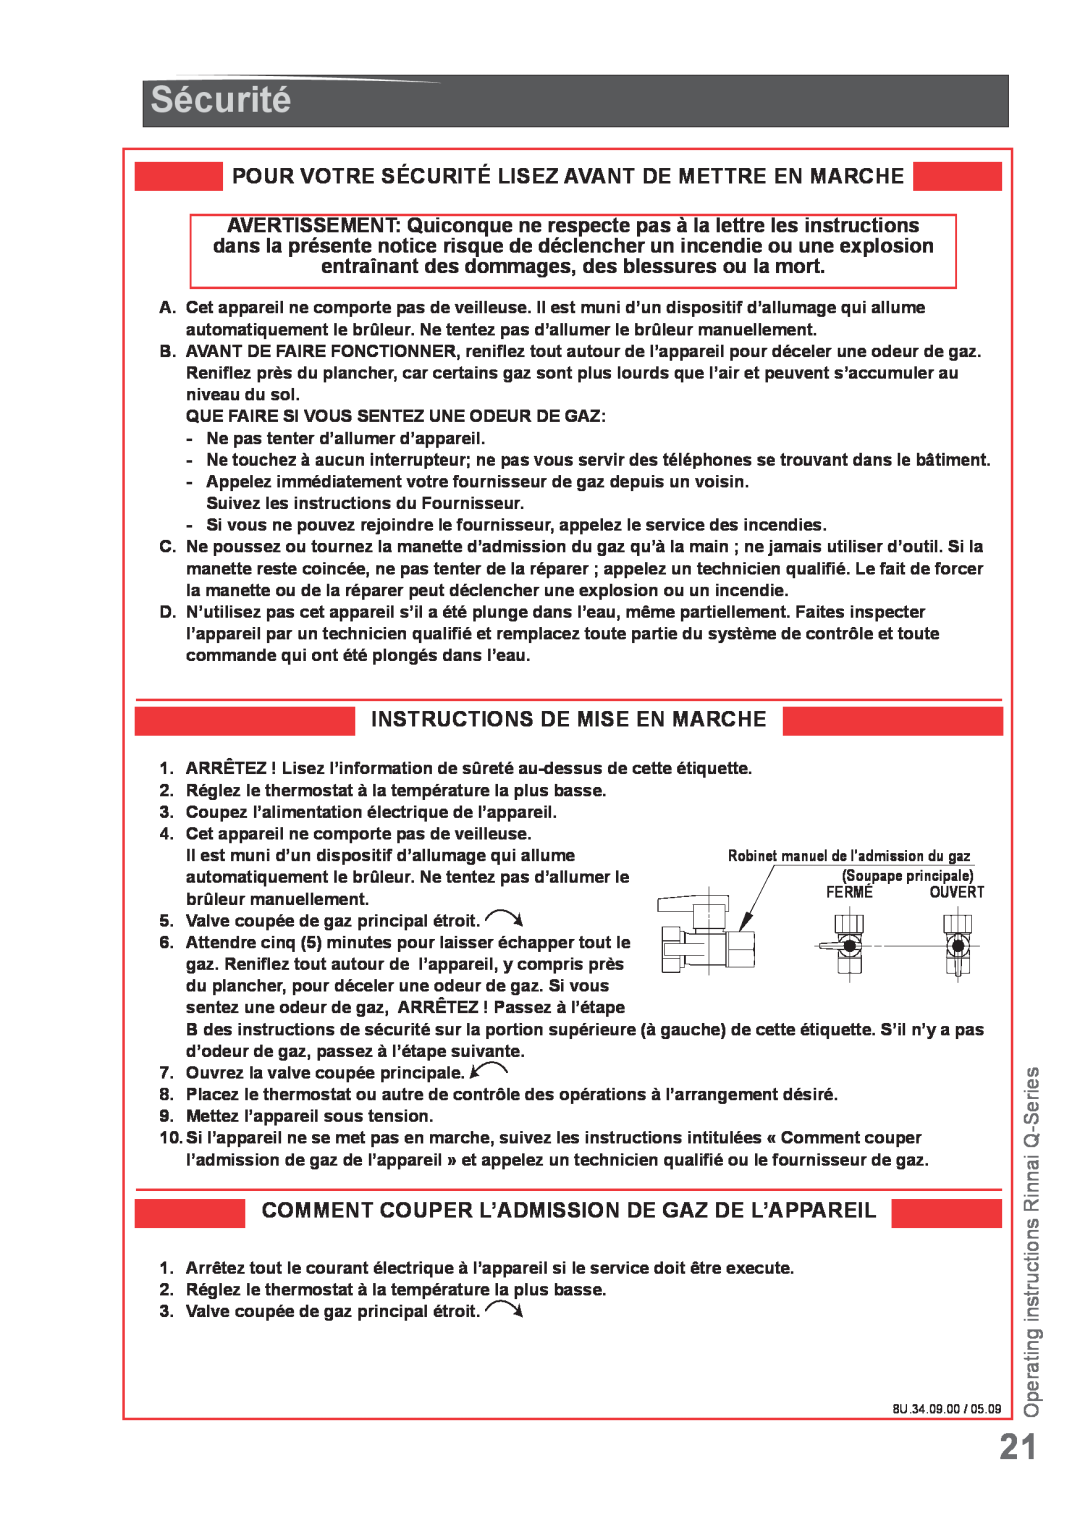 Rinnai Q85SN, Q175CP, Q85SP manual Sécurité, Instructions De Mise En Marche, Comment Couper L’Admission De Gaz De L’Appareil 